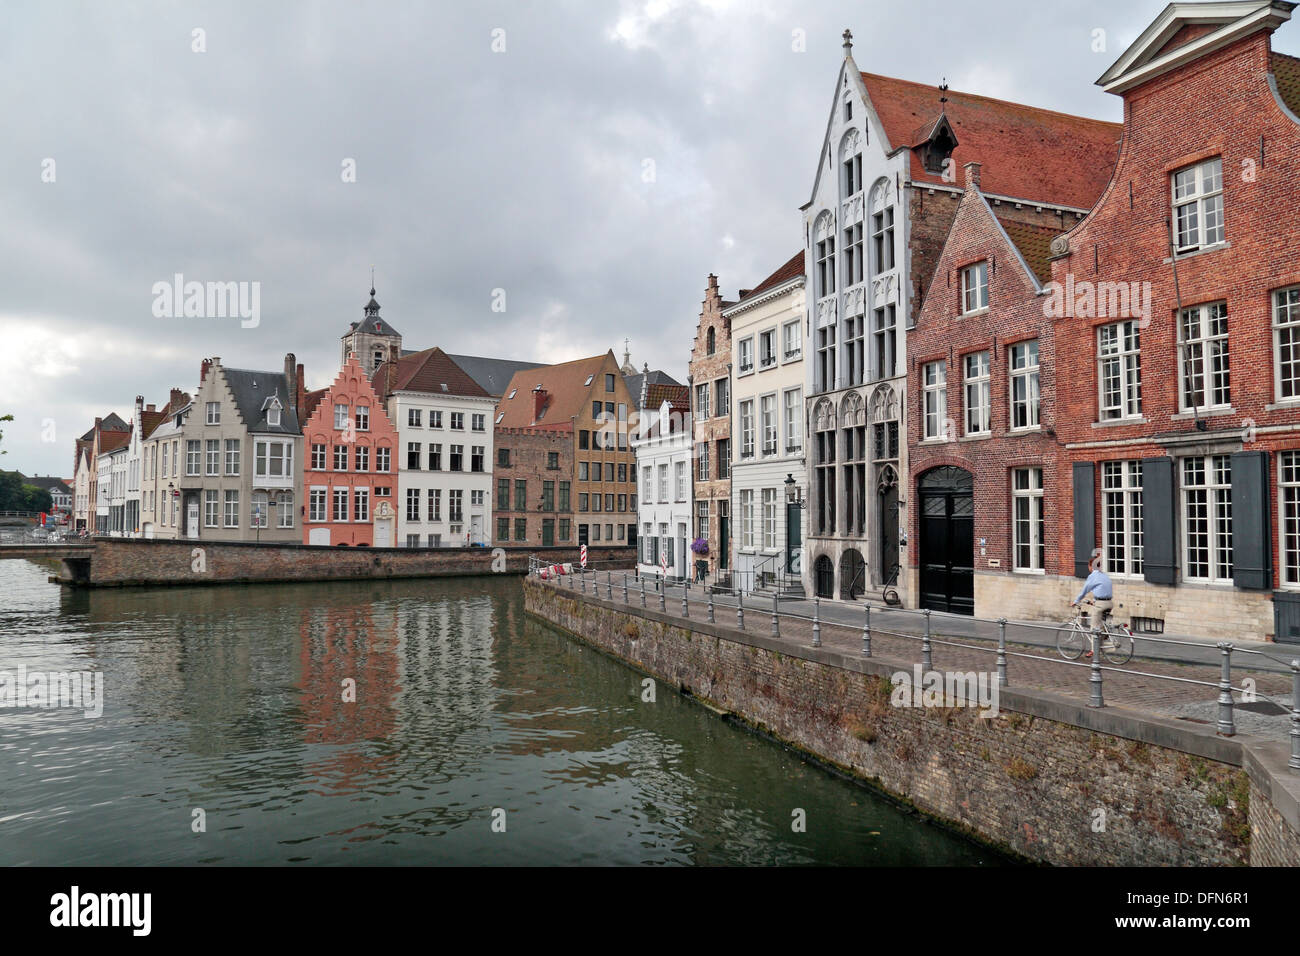 Propriétés côté canal typique (sur Spiegelrei) dans le quartier historique de Bruges (Brugge), Flandre occidentale, Belgique. Banque D'Images